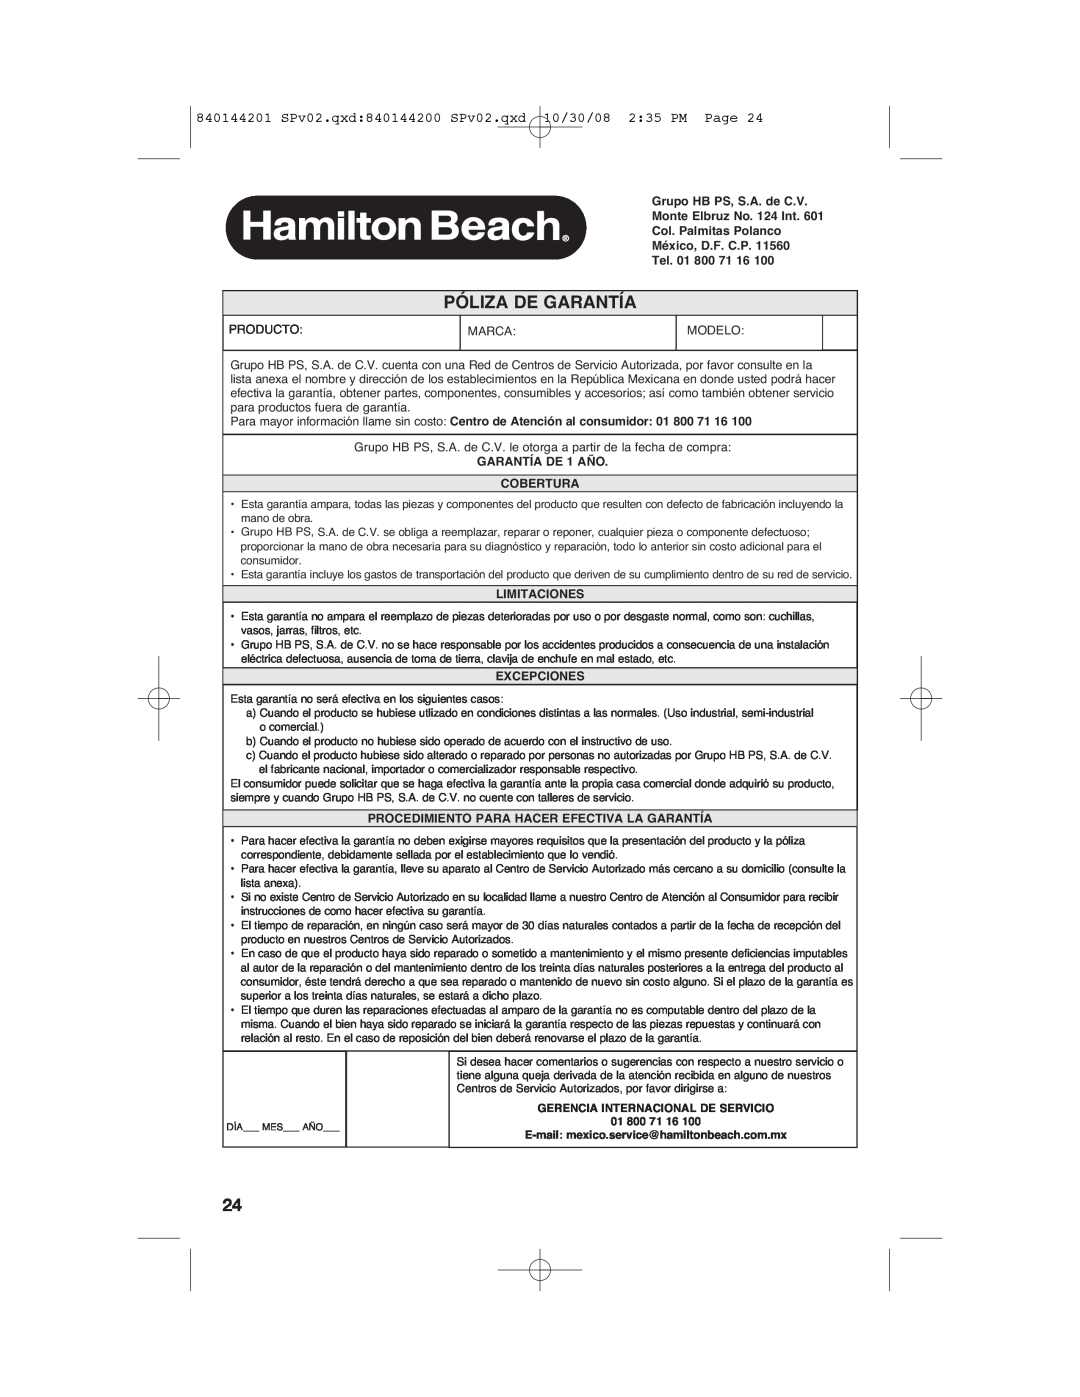 Hamilton Beach 04992F manual Póliza De Garantía, 10/30/08 2 35 PM Page, 840144201 SPv02.qxd 840144200 SPv02.qxd 